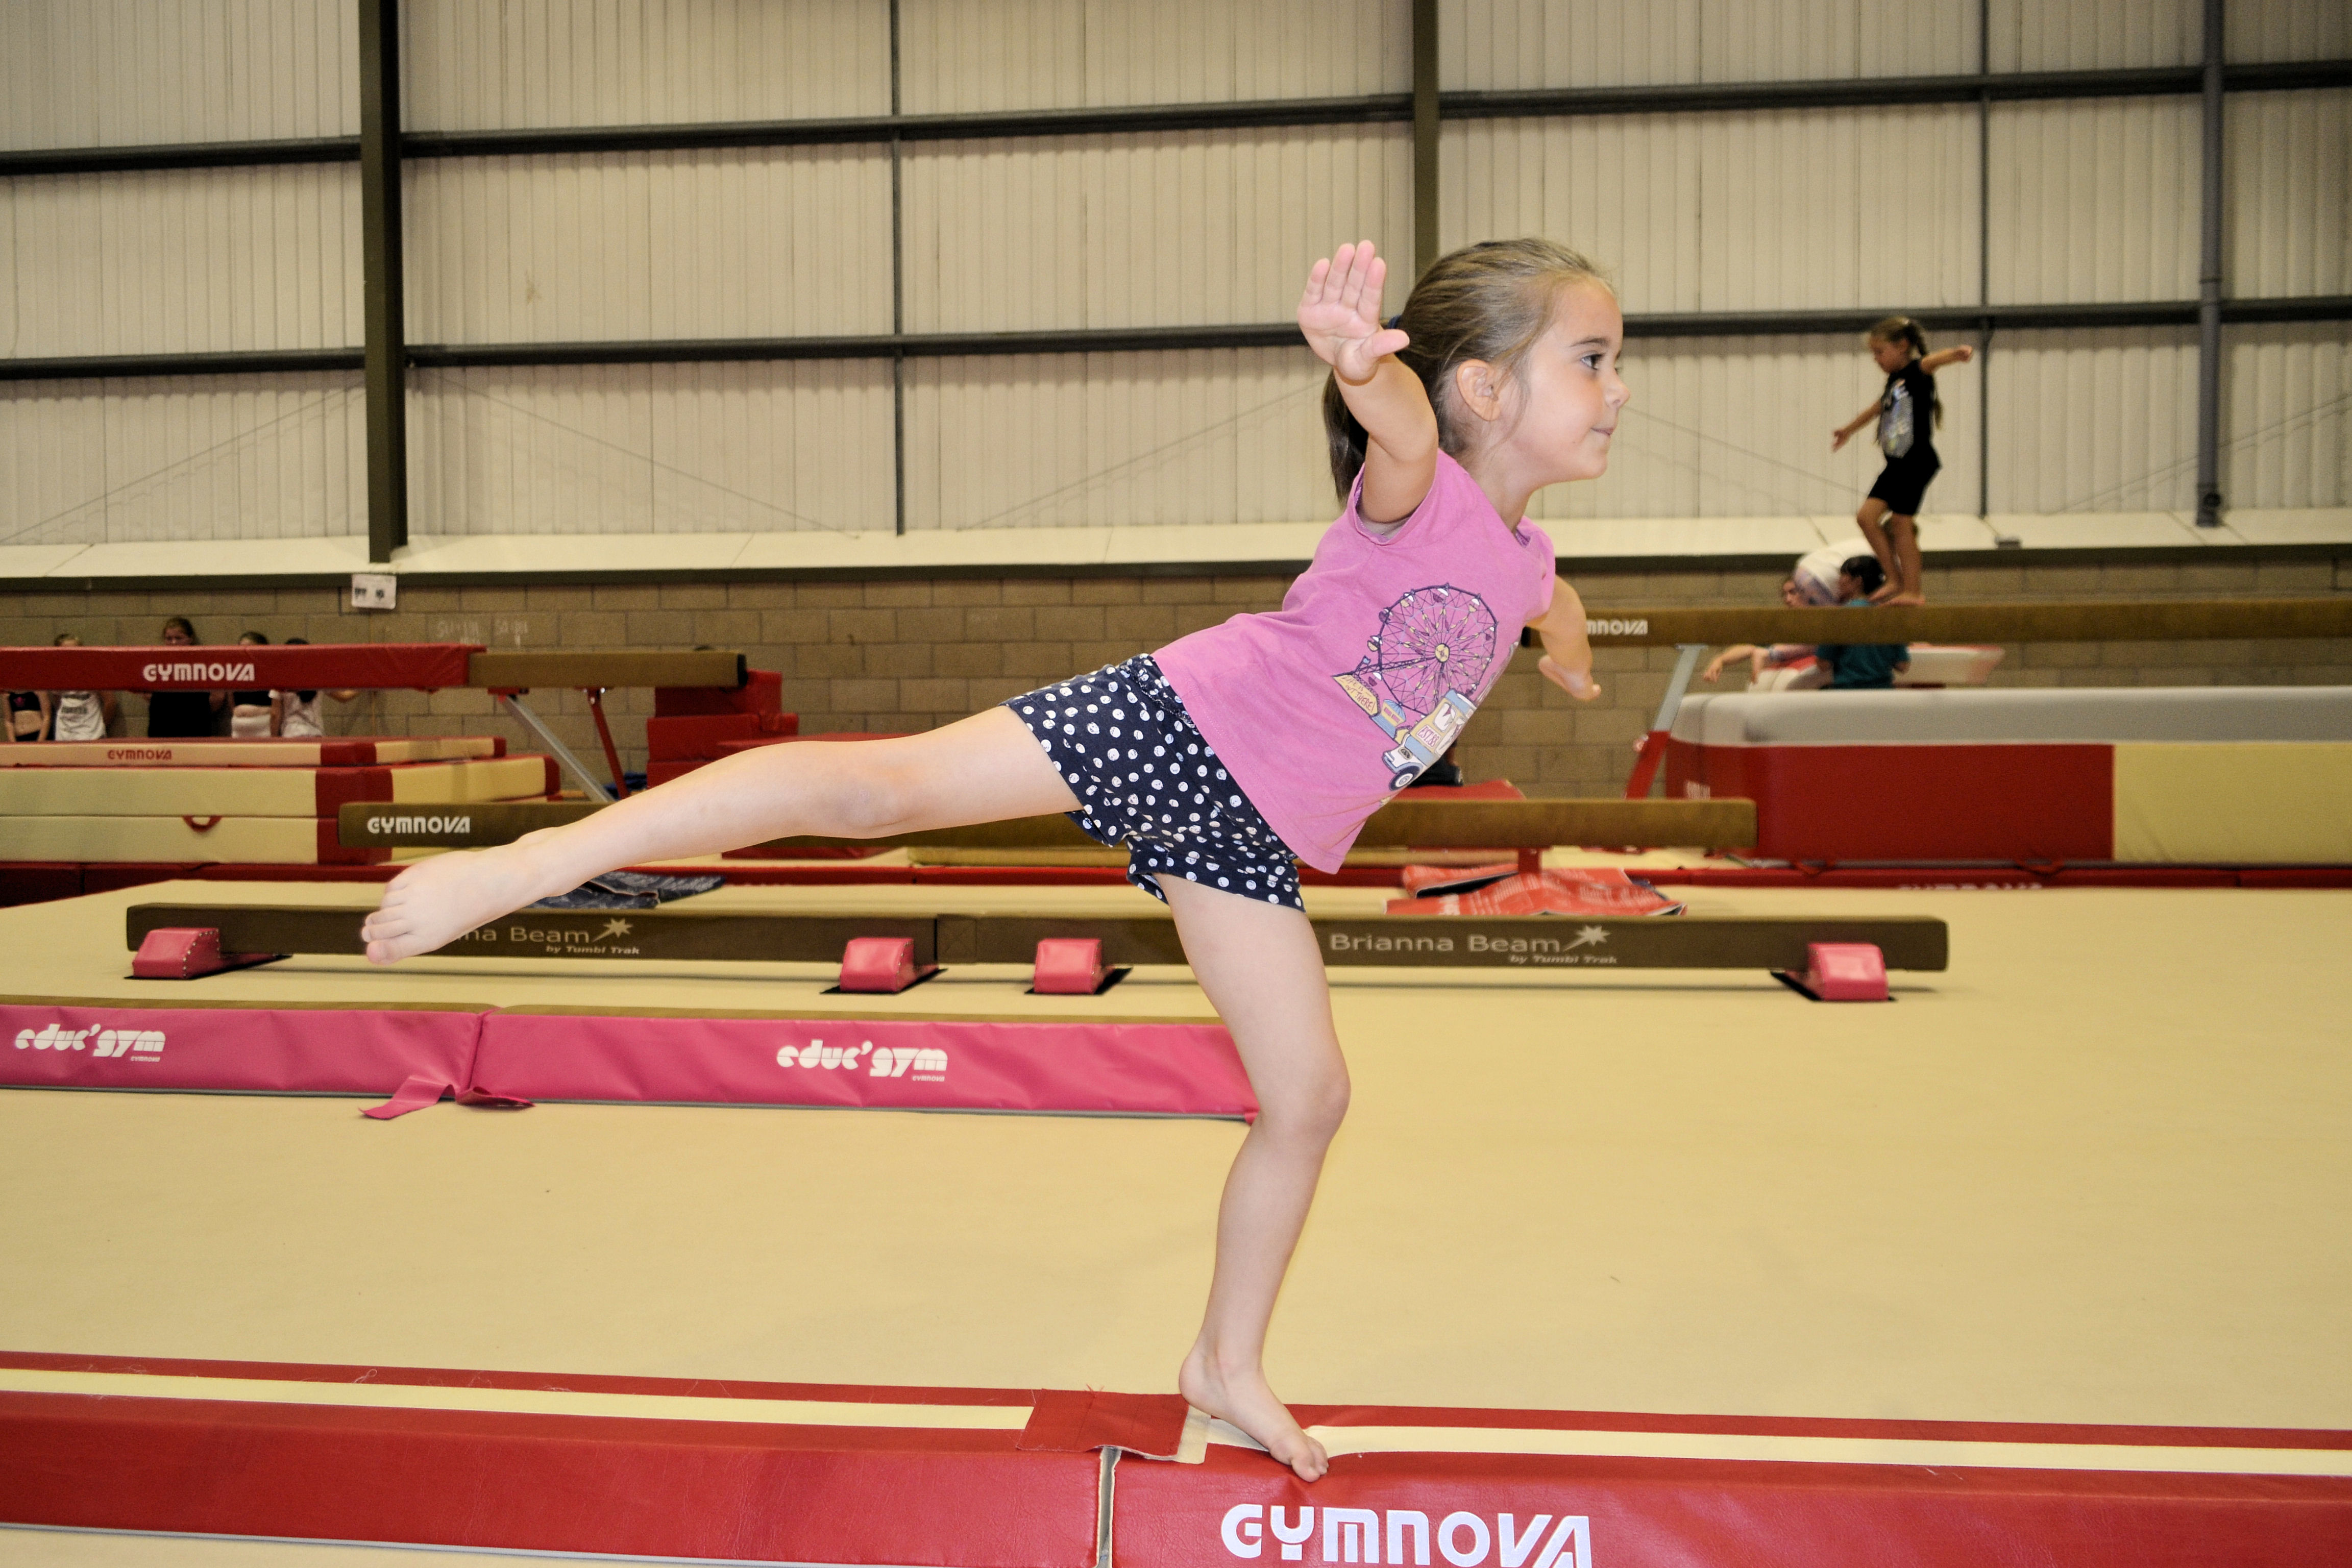 image of Gymnastics - girl balancing on a childs balance beam